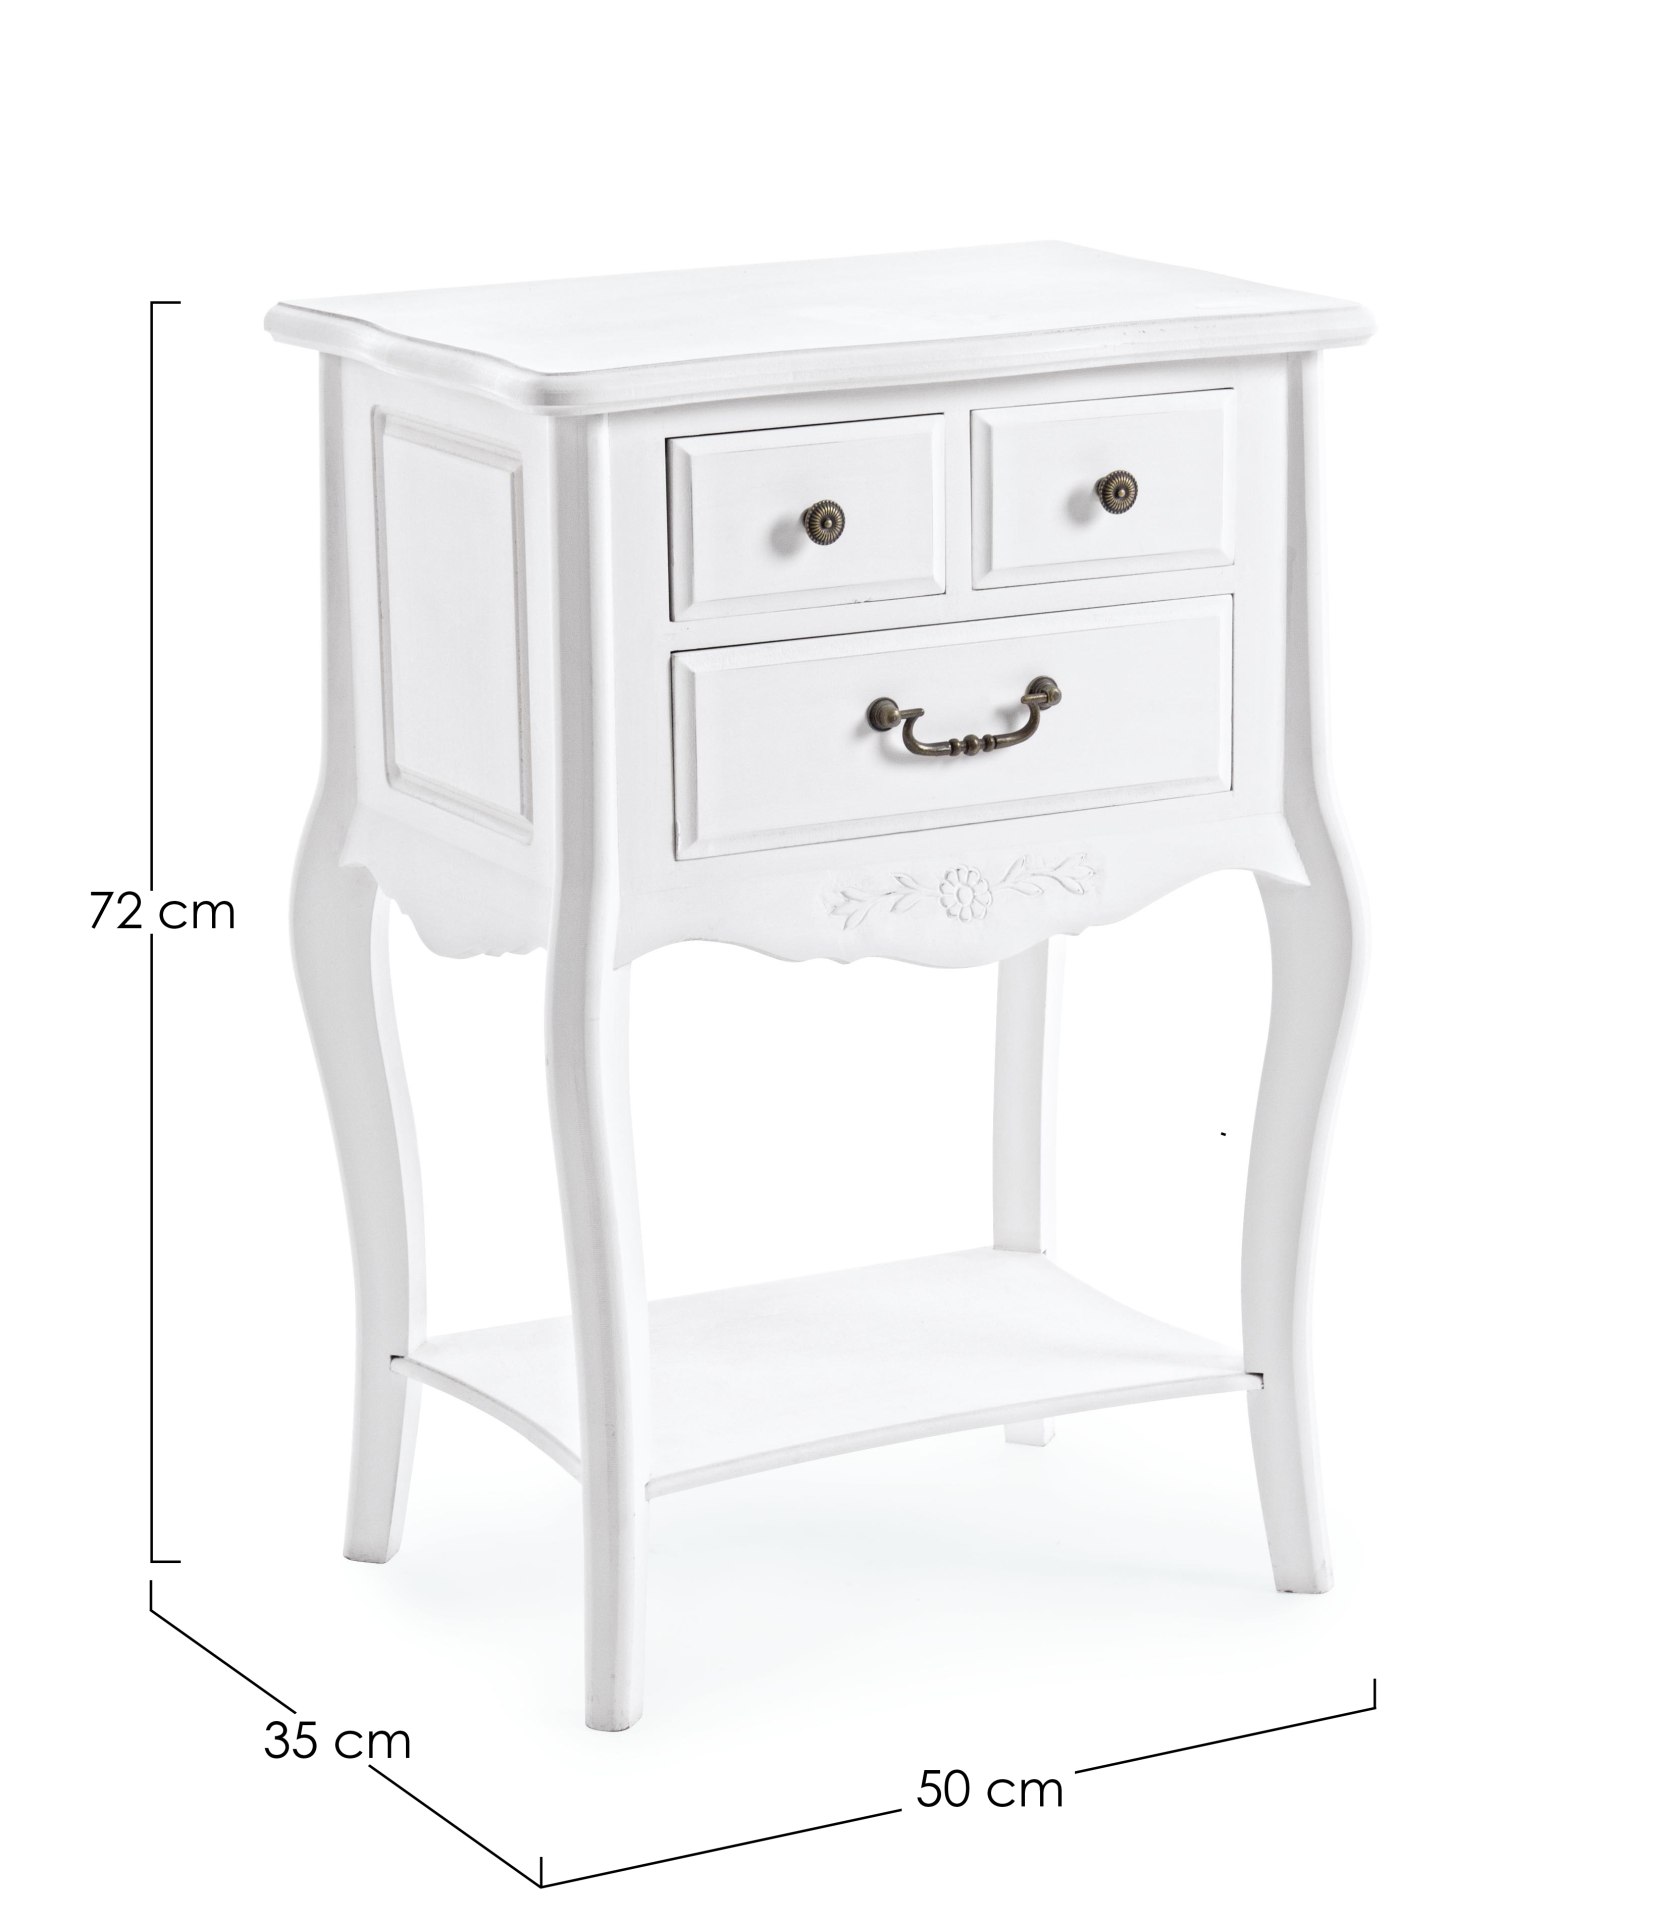 Der Nachttisch Daisy überzeugt mit seinem klassischen Design. Gefertigt wurde er aus MDF, welches einen weißen Farbton besitzt. Das Gestell ist auch aus MDF. Der Nachttisch verfügt über drei Schubladen. Die Breite beträgt 50 cm.